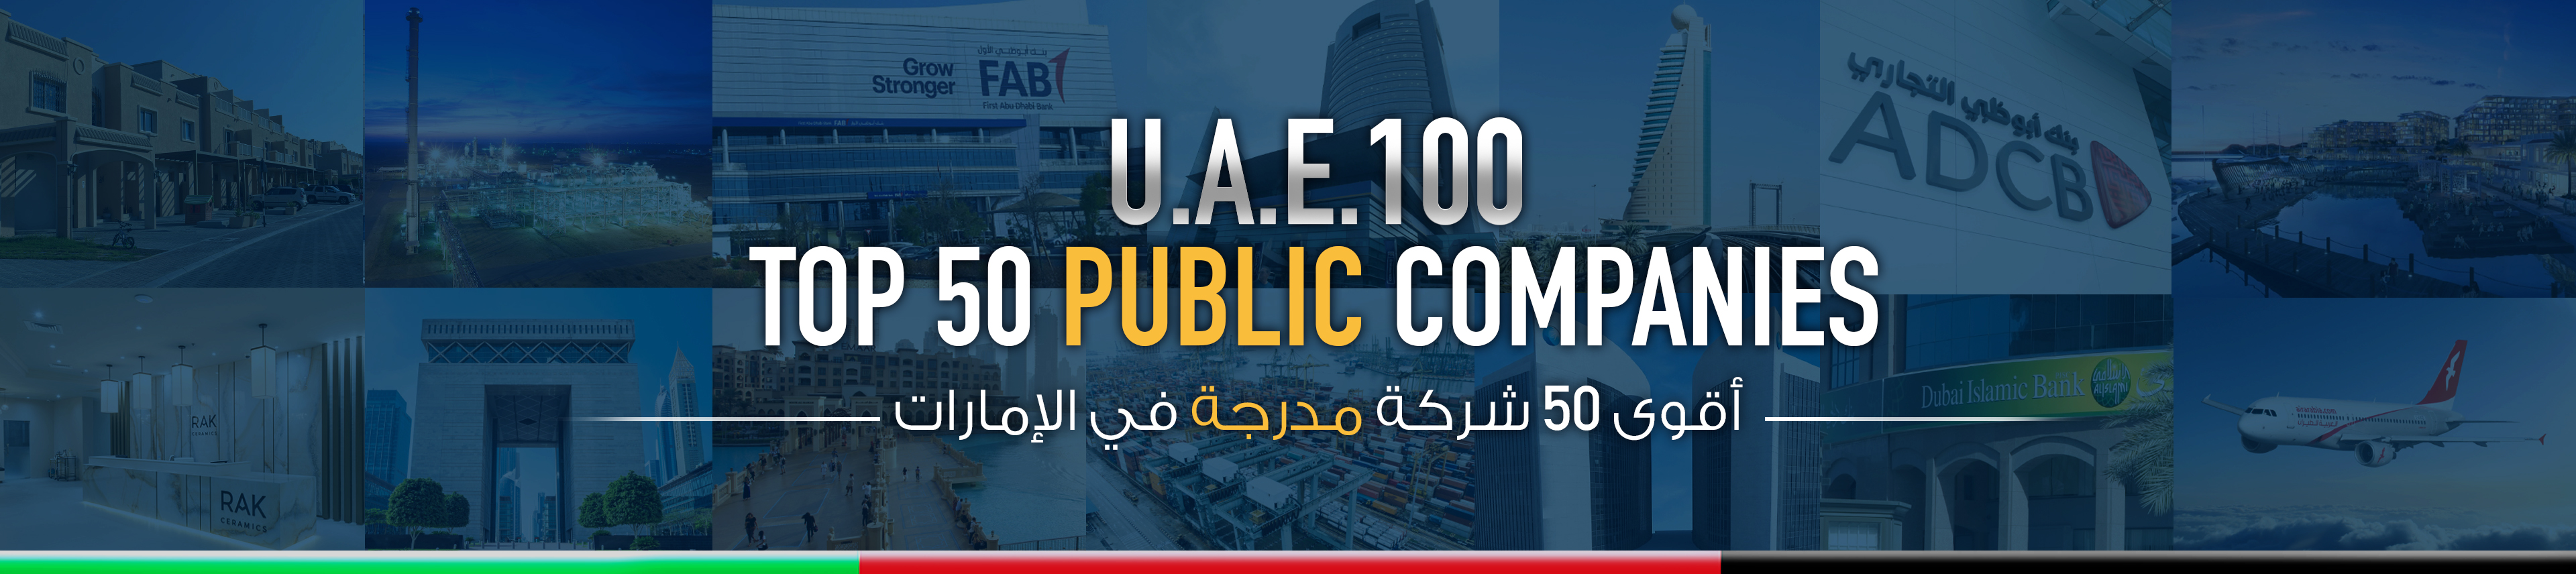 Top 50 Public Companies In The UAE